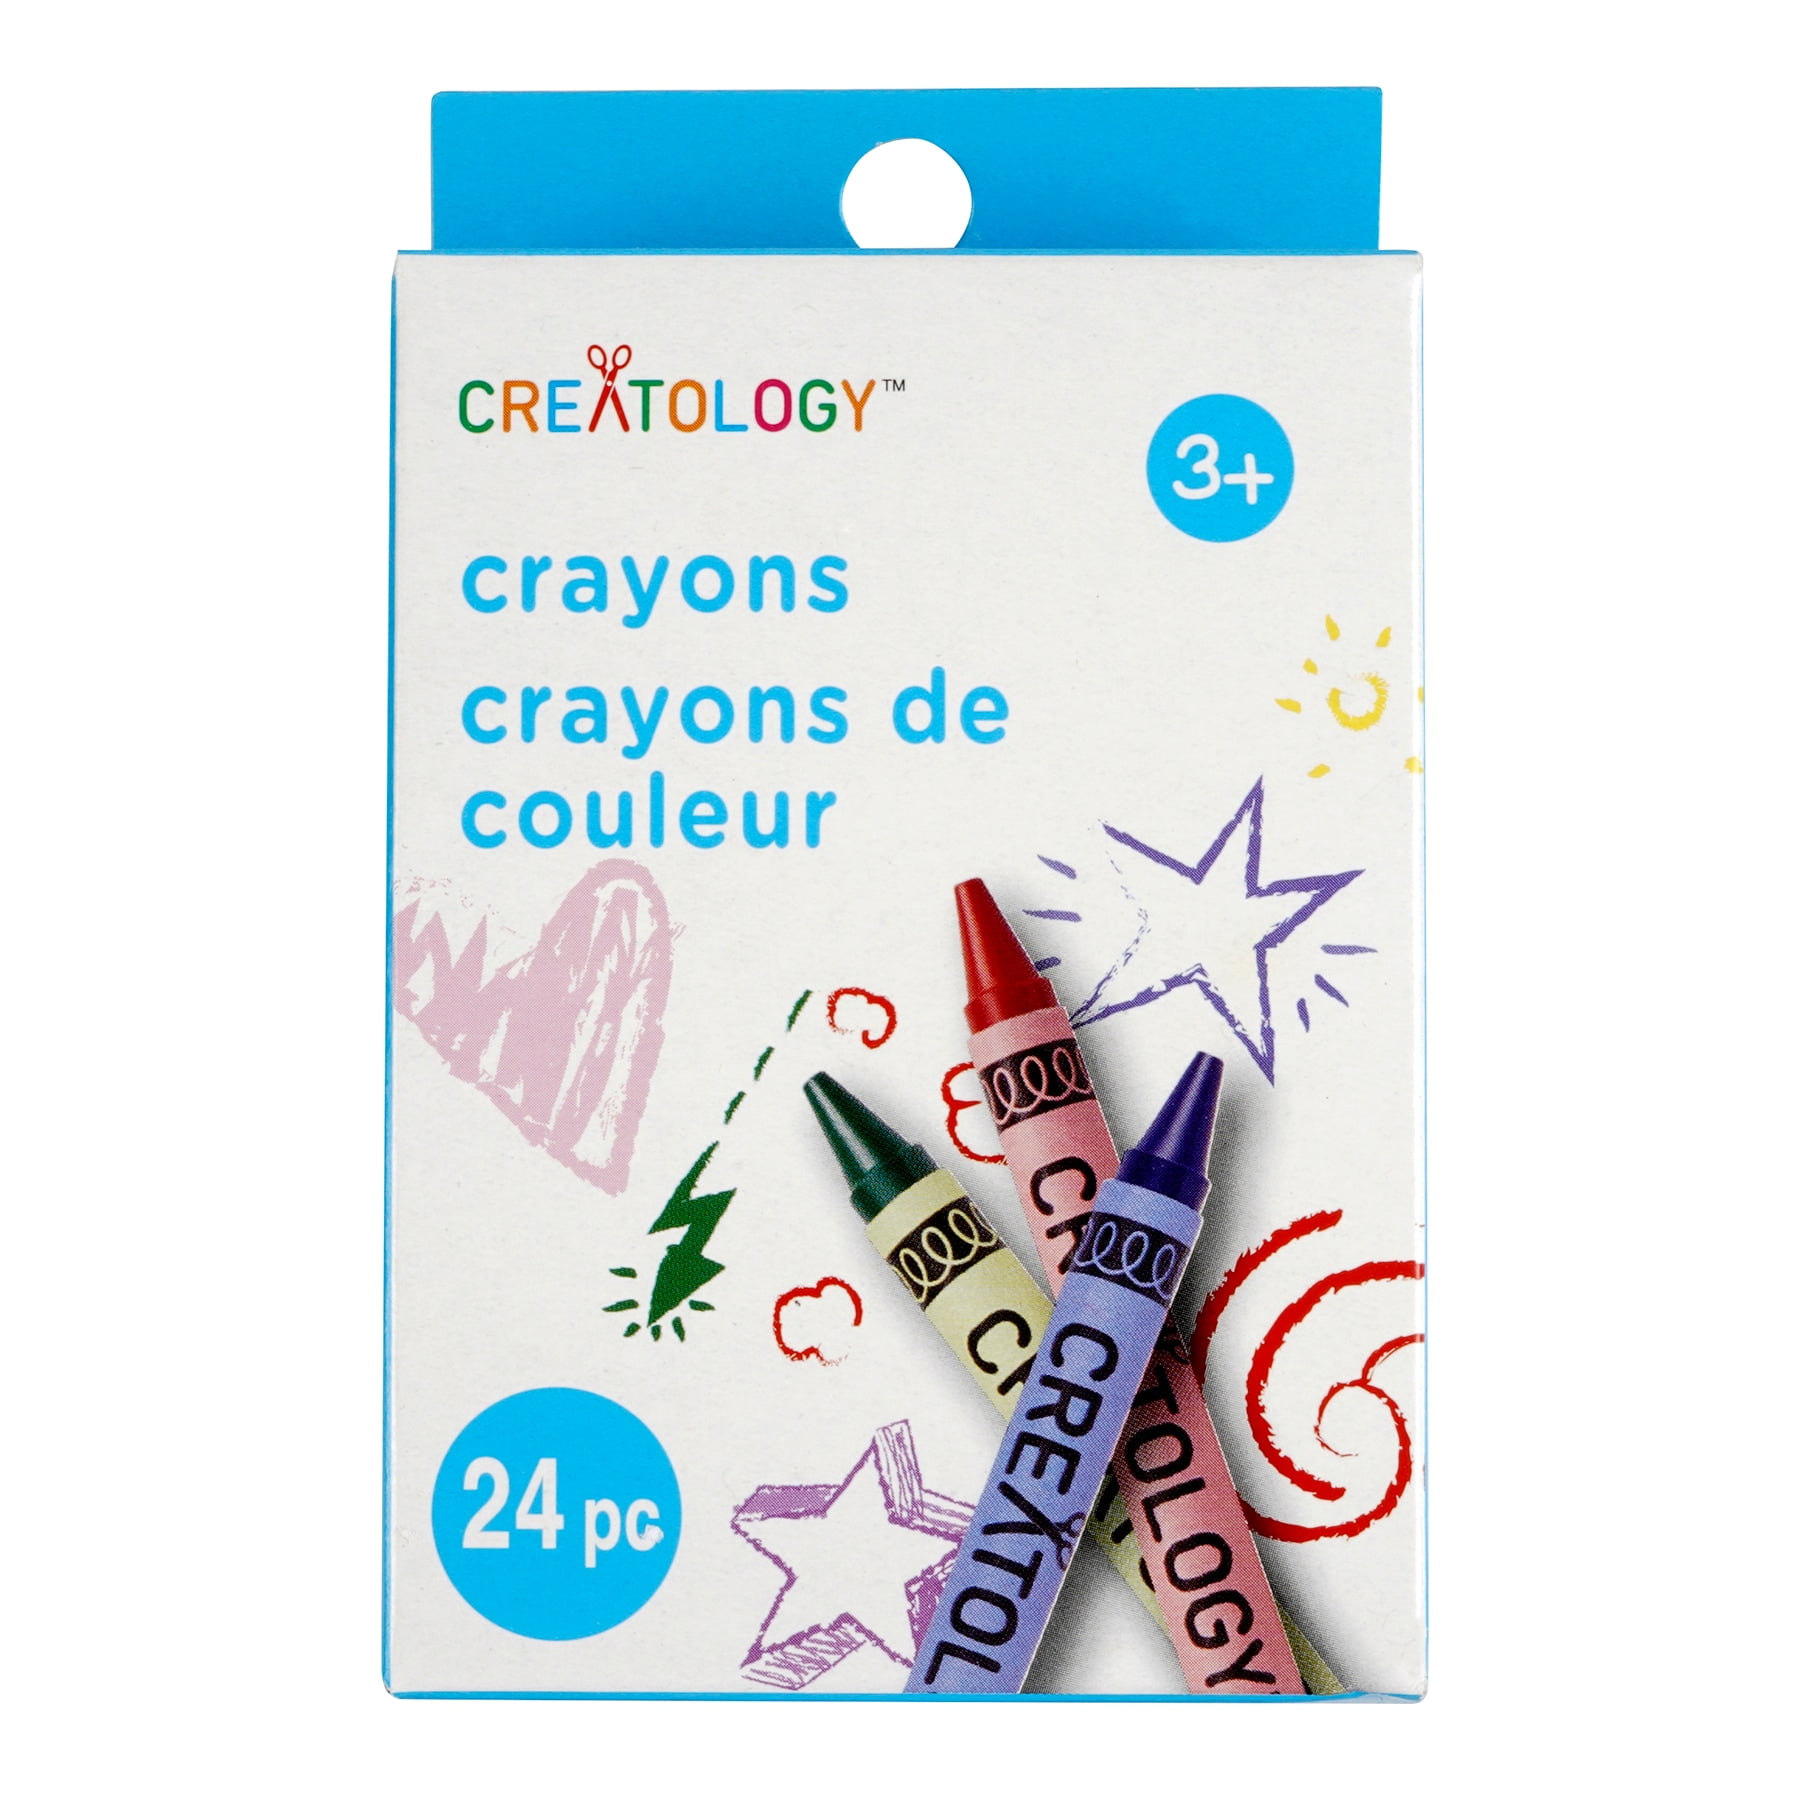 crayolacrayons – The Kids Niche